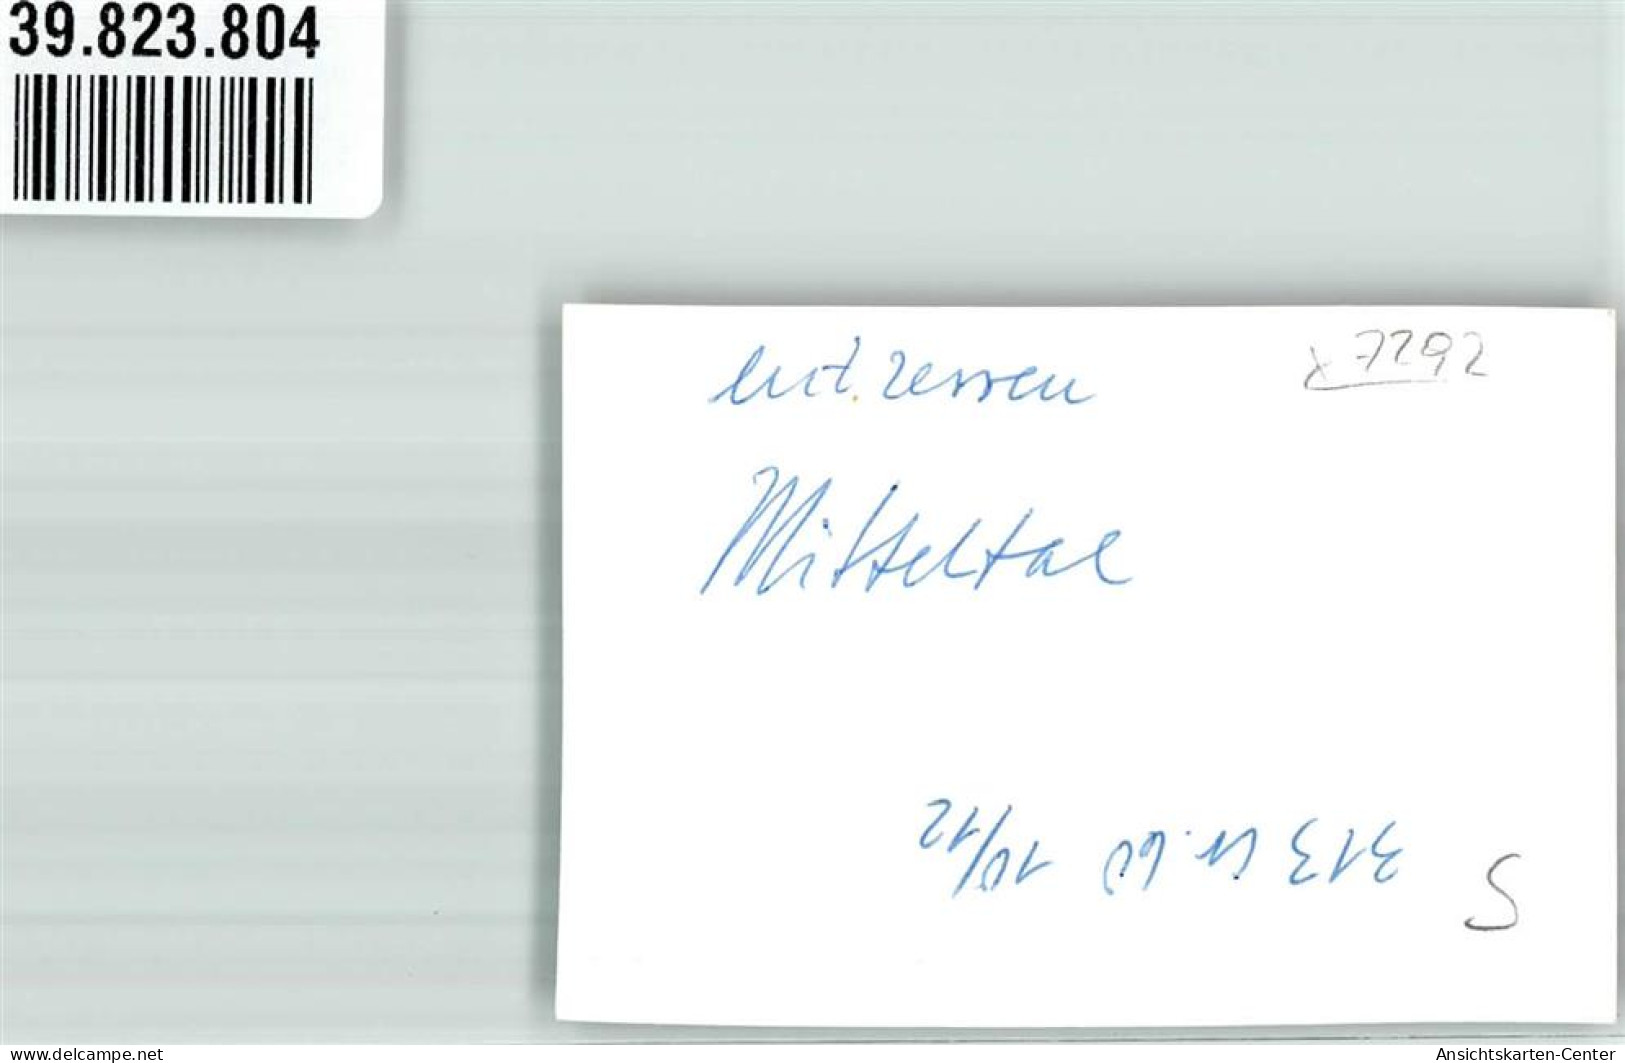 39823804 - Mitteltal - Baiersbronn